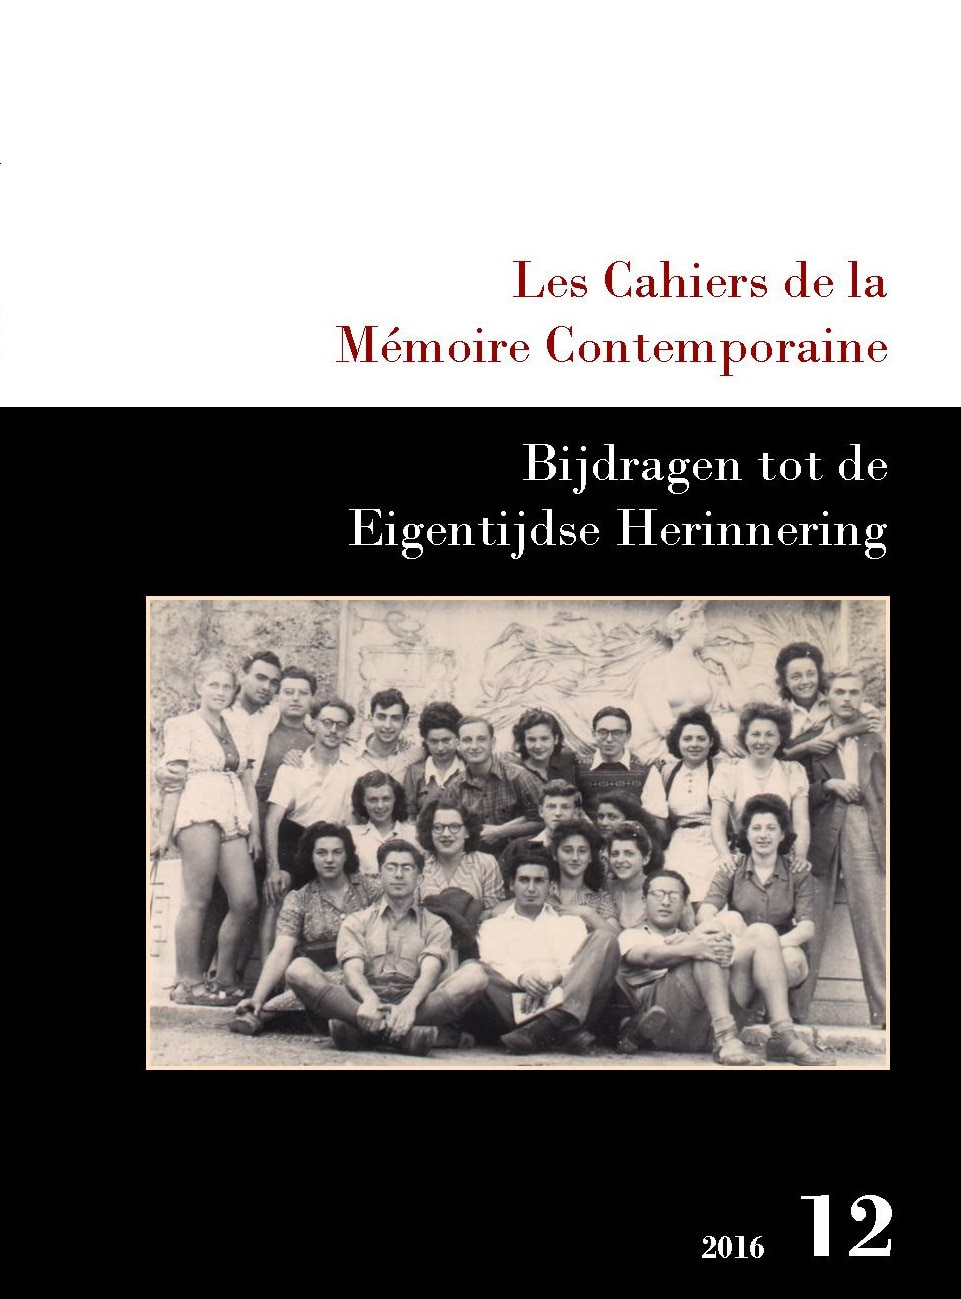 Les Cahiers de la Mémoire Contemporaine 12-2016